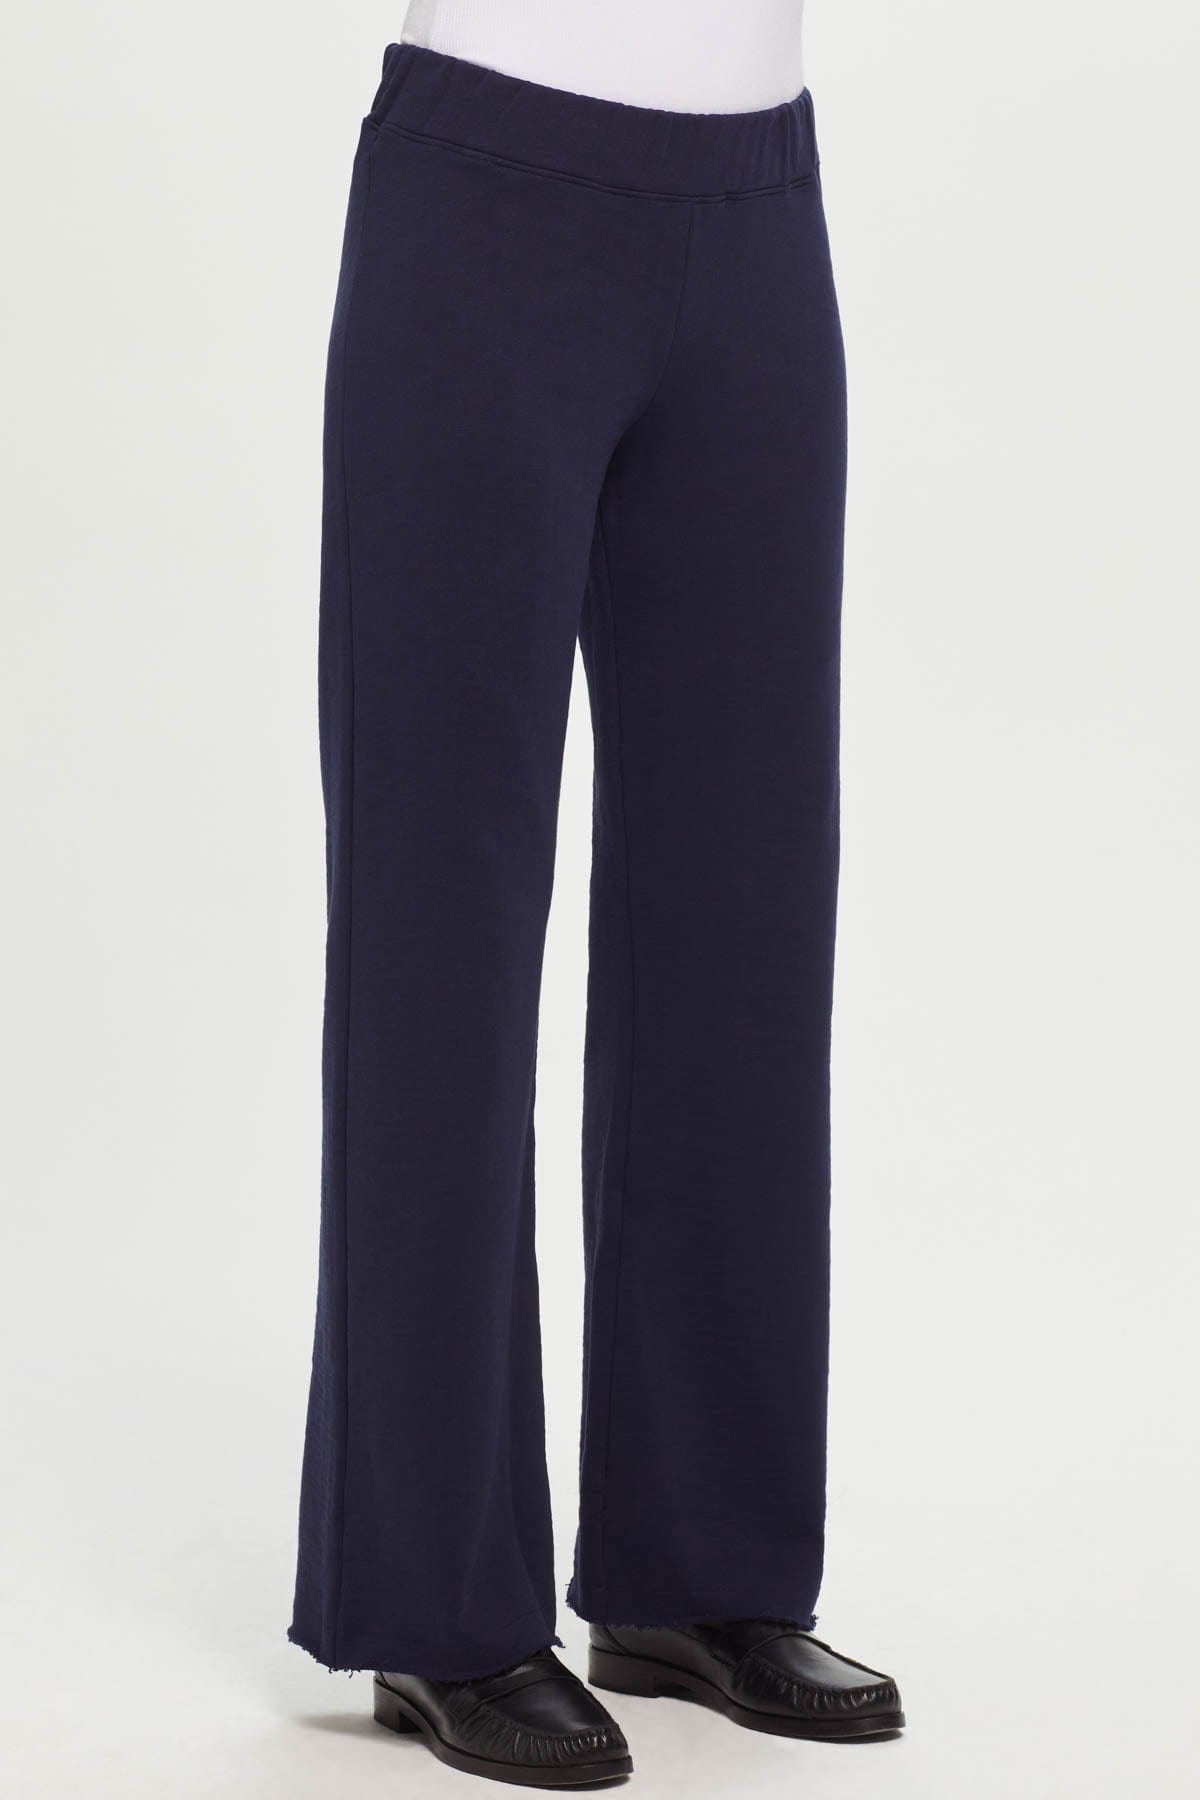 JWZUY Womens Solid Velvet Pant Side Split Dance Lace Trim Bloomers Pants  Ankle-Length Elastic Waist Pant Blue XL